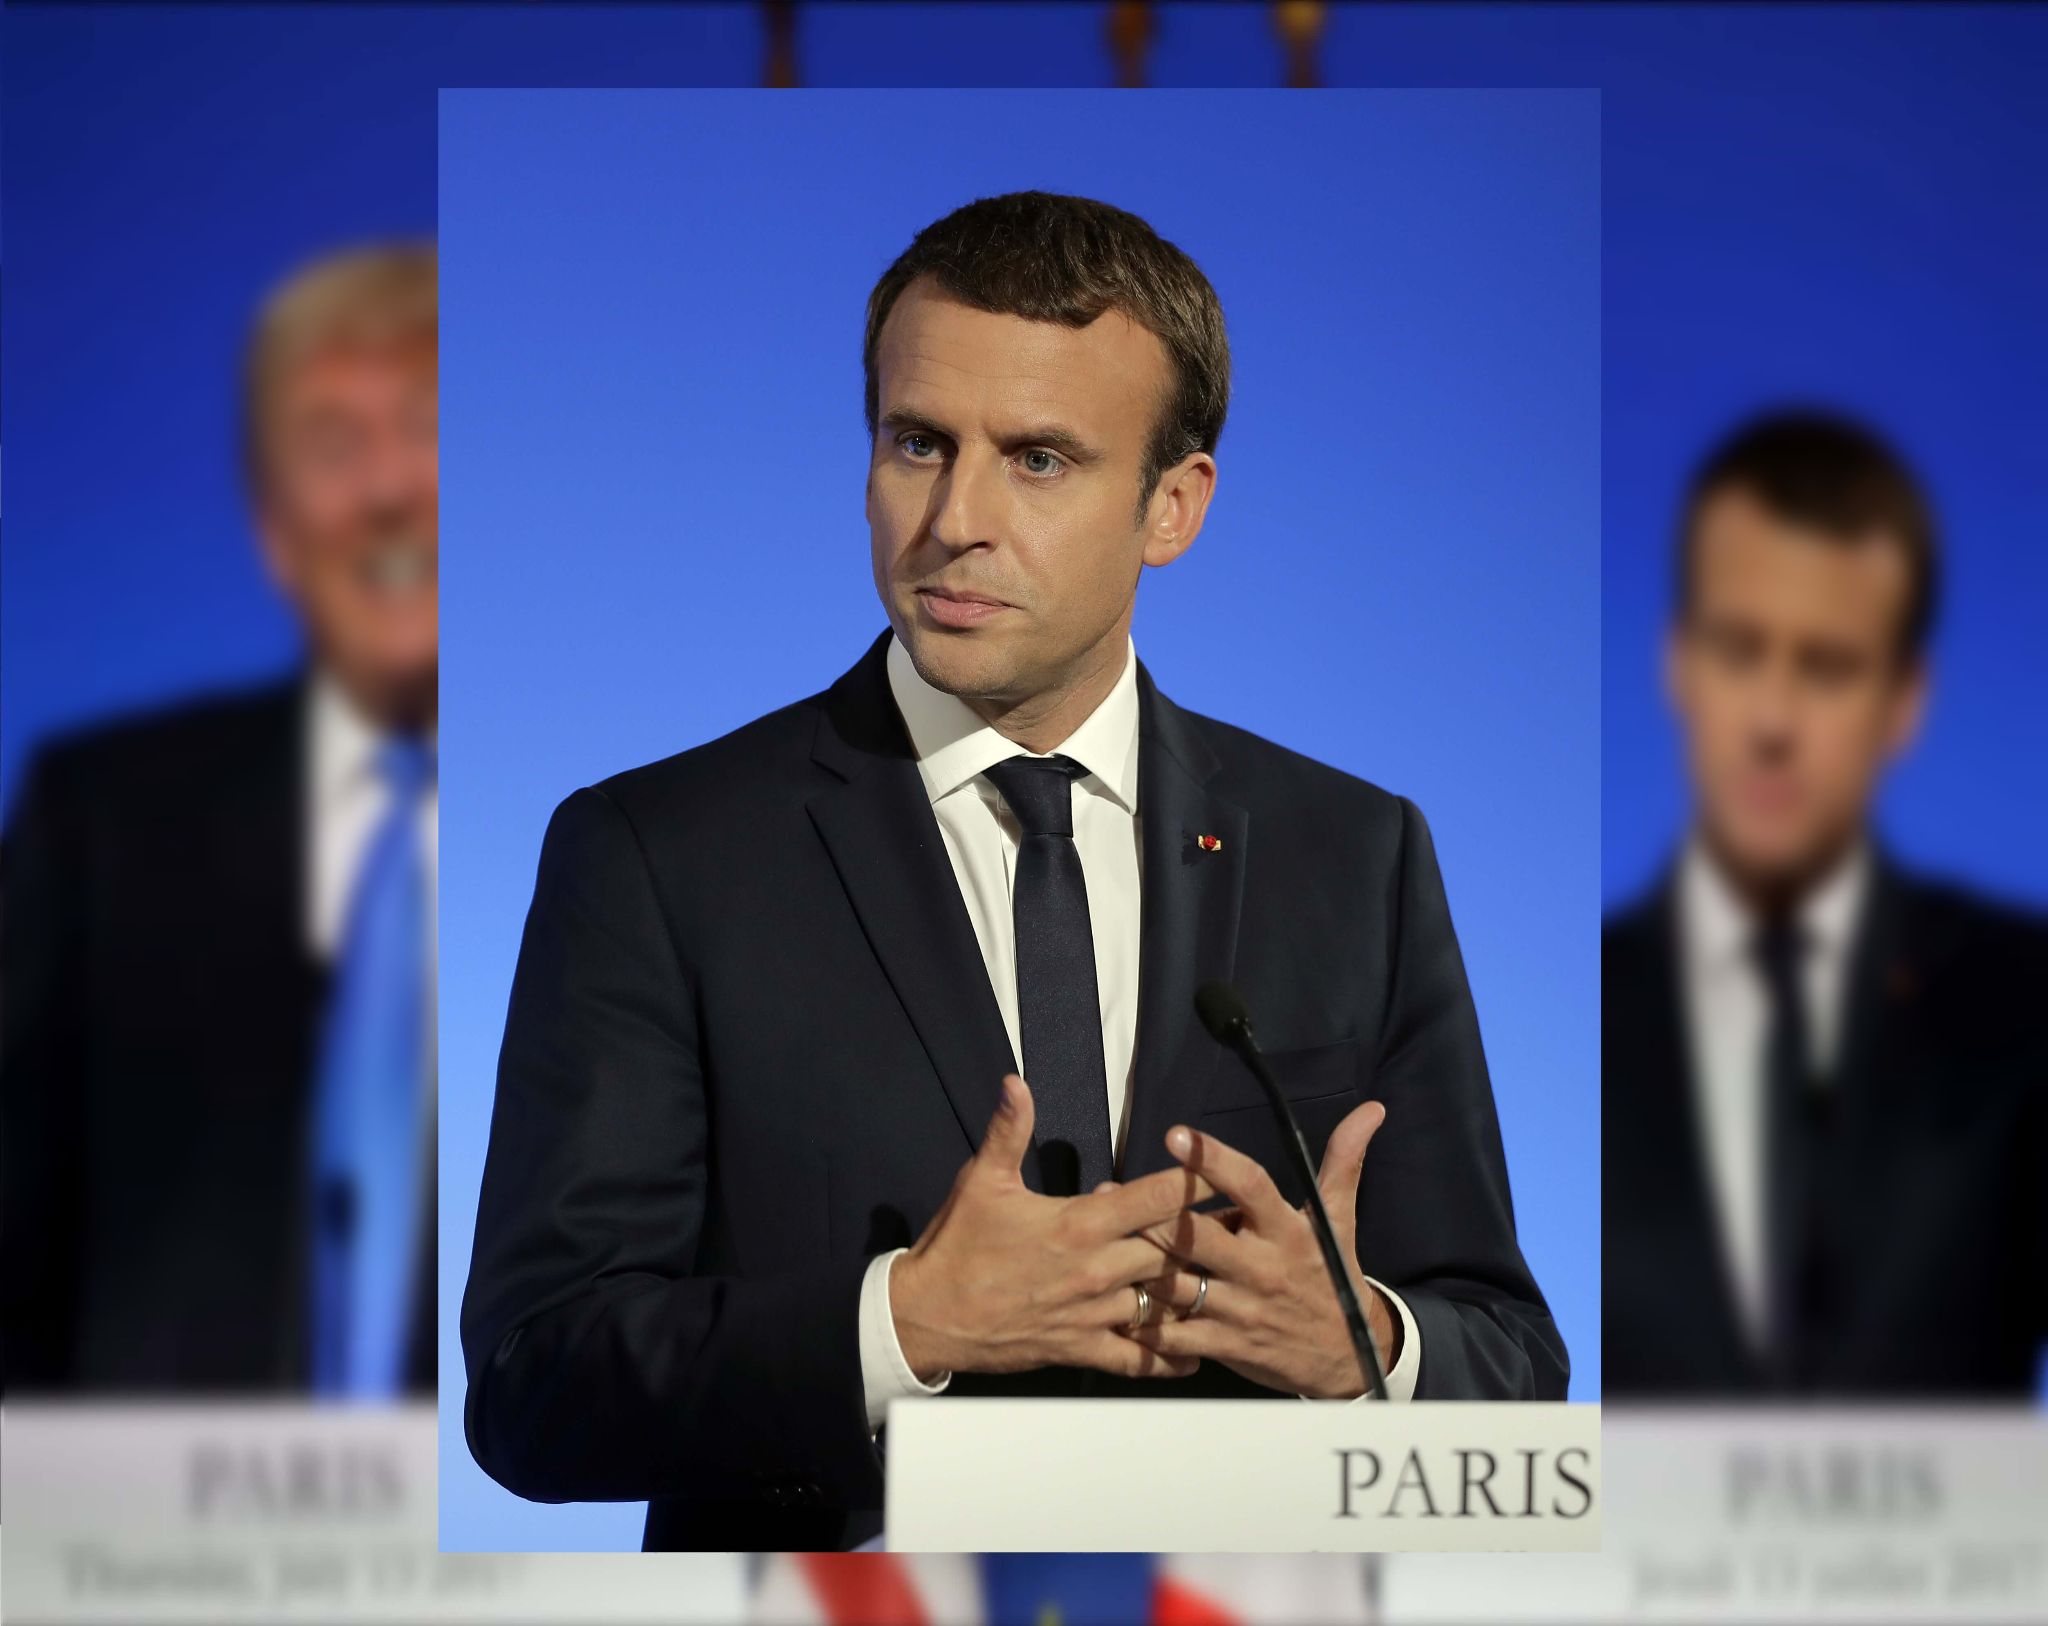 El presidente francés Emmanuel Macron habla durante una conferencia de prensa